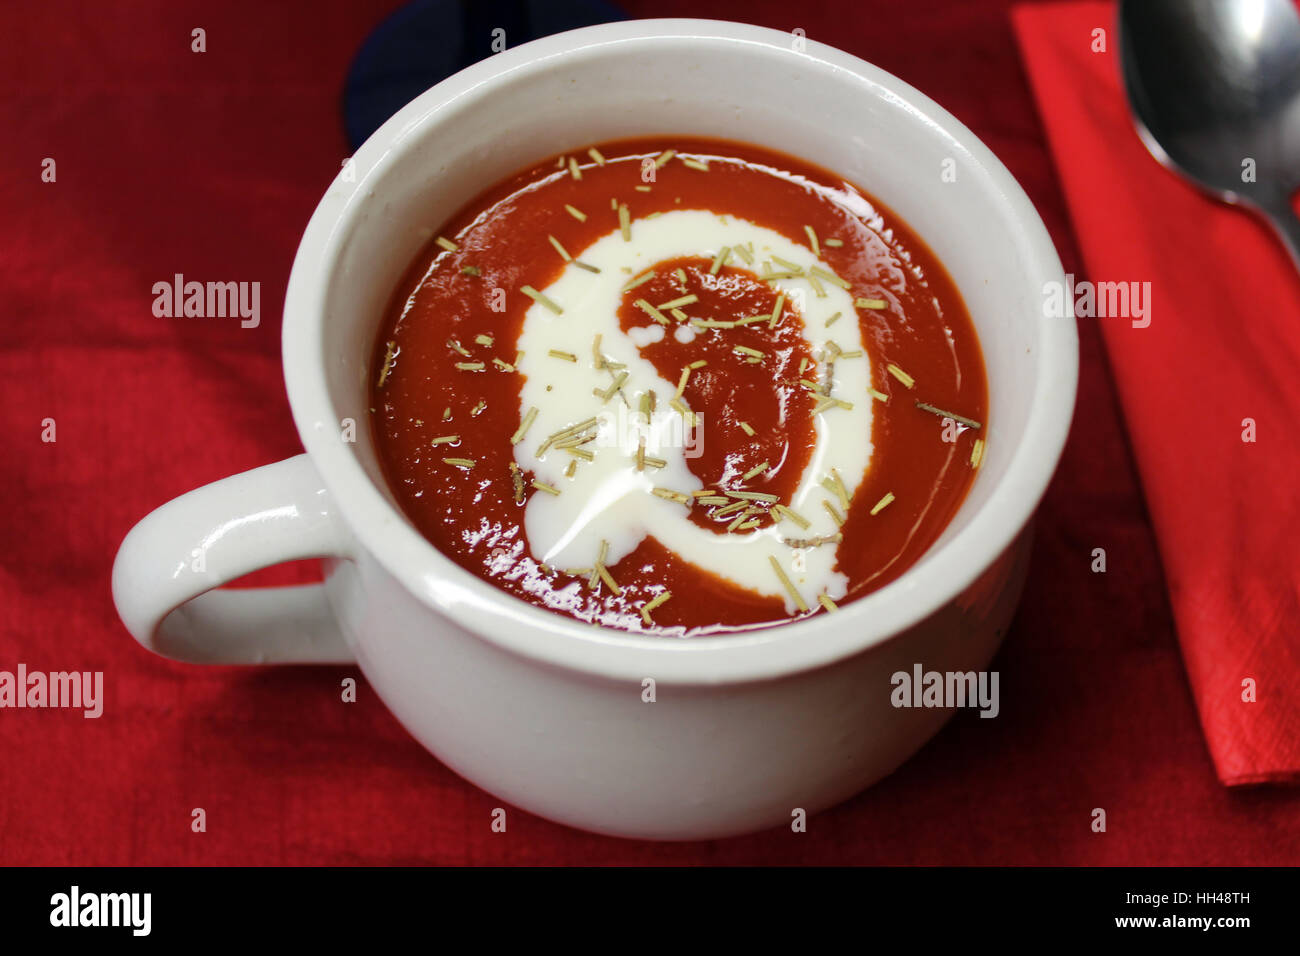 A bowl of tomato soup Stock Photo